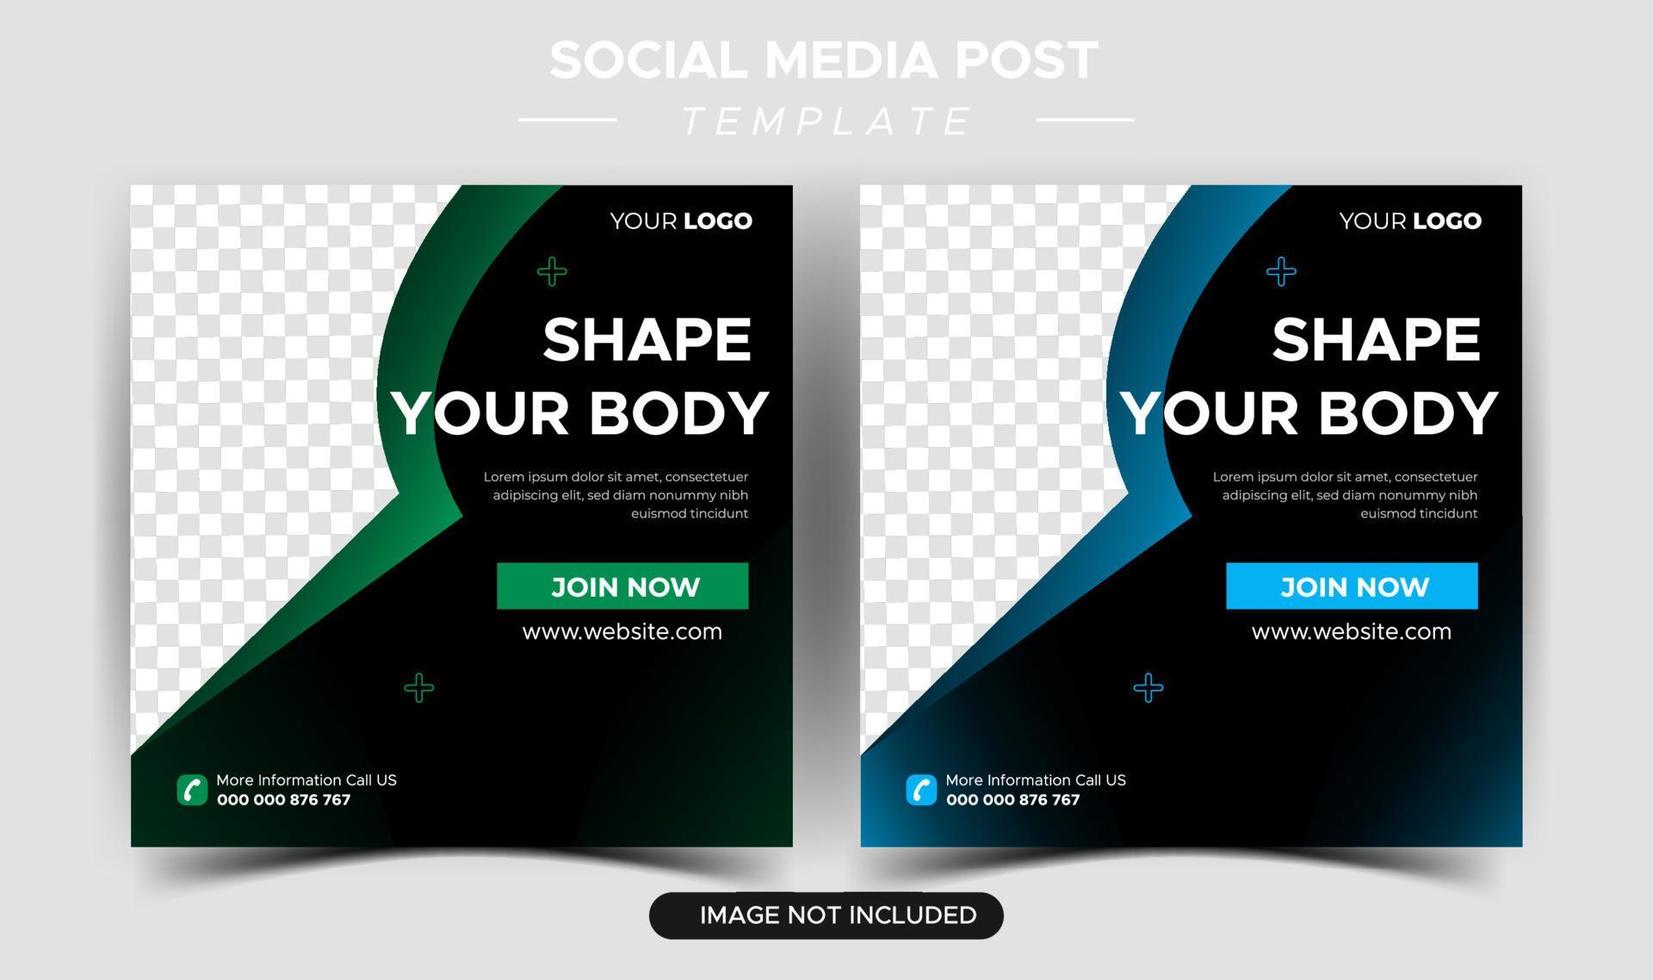 platt samling av inlägg för hälsa och fitness på sociala medier vektor